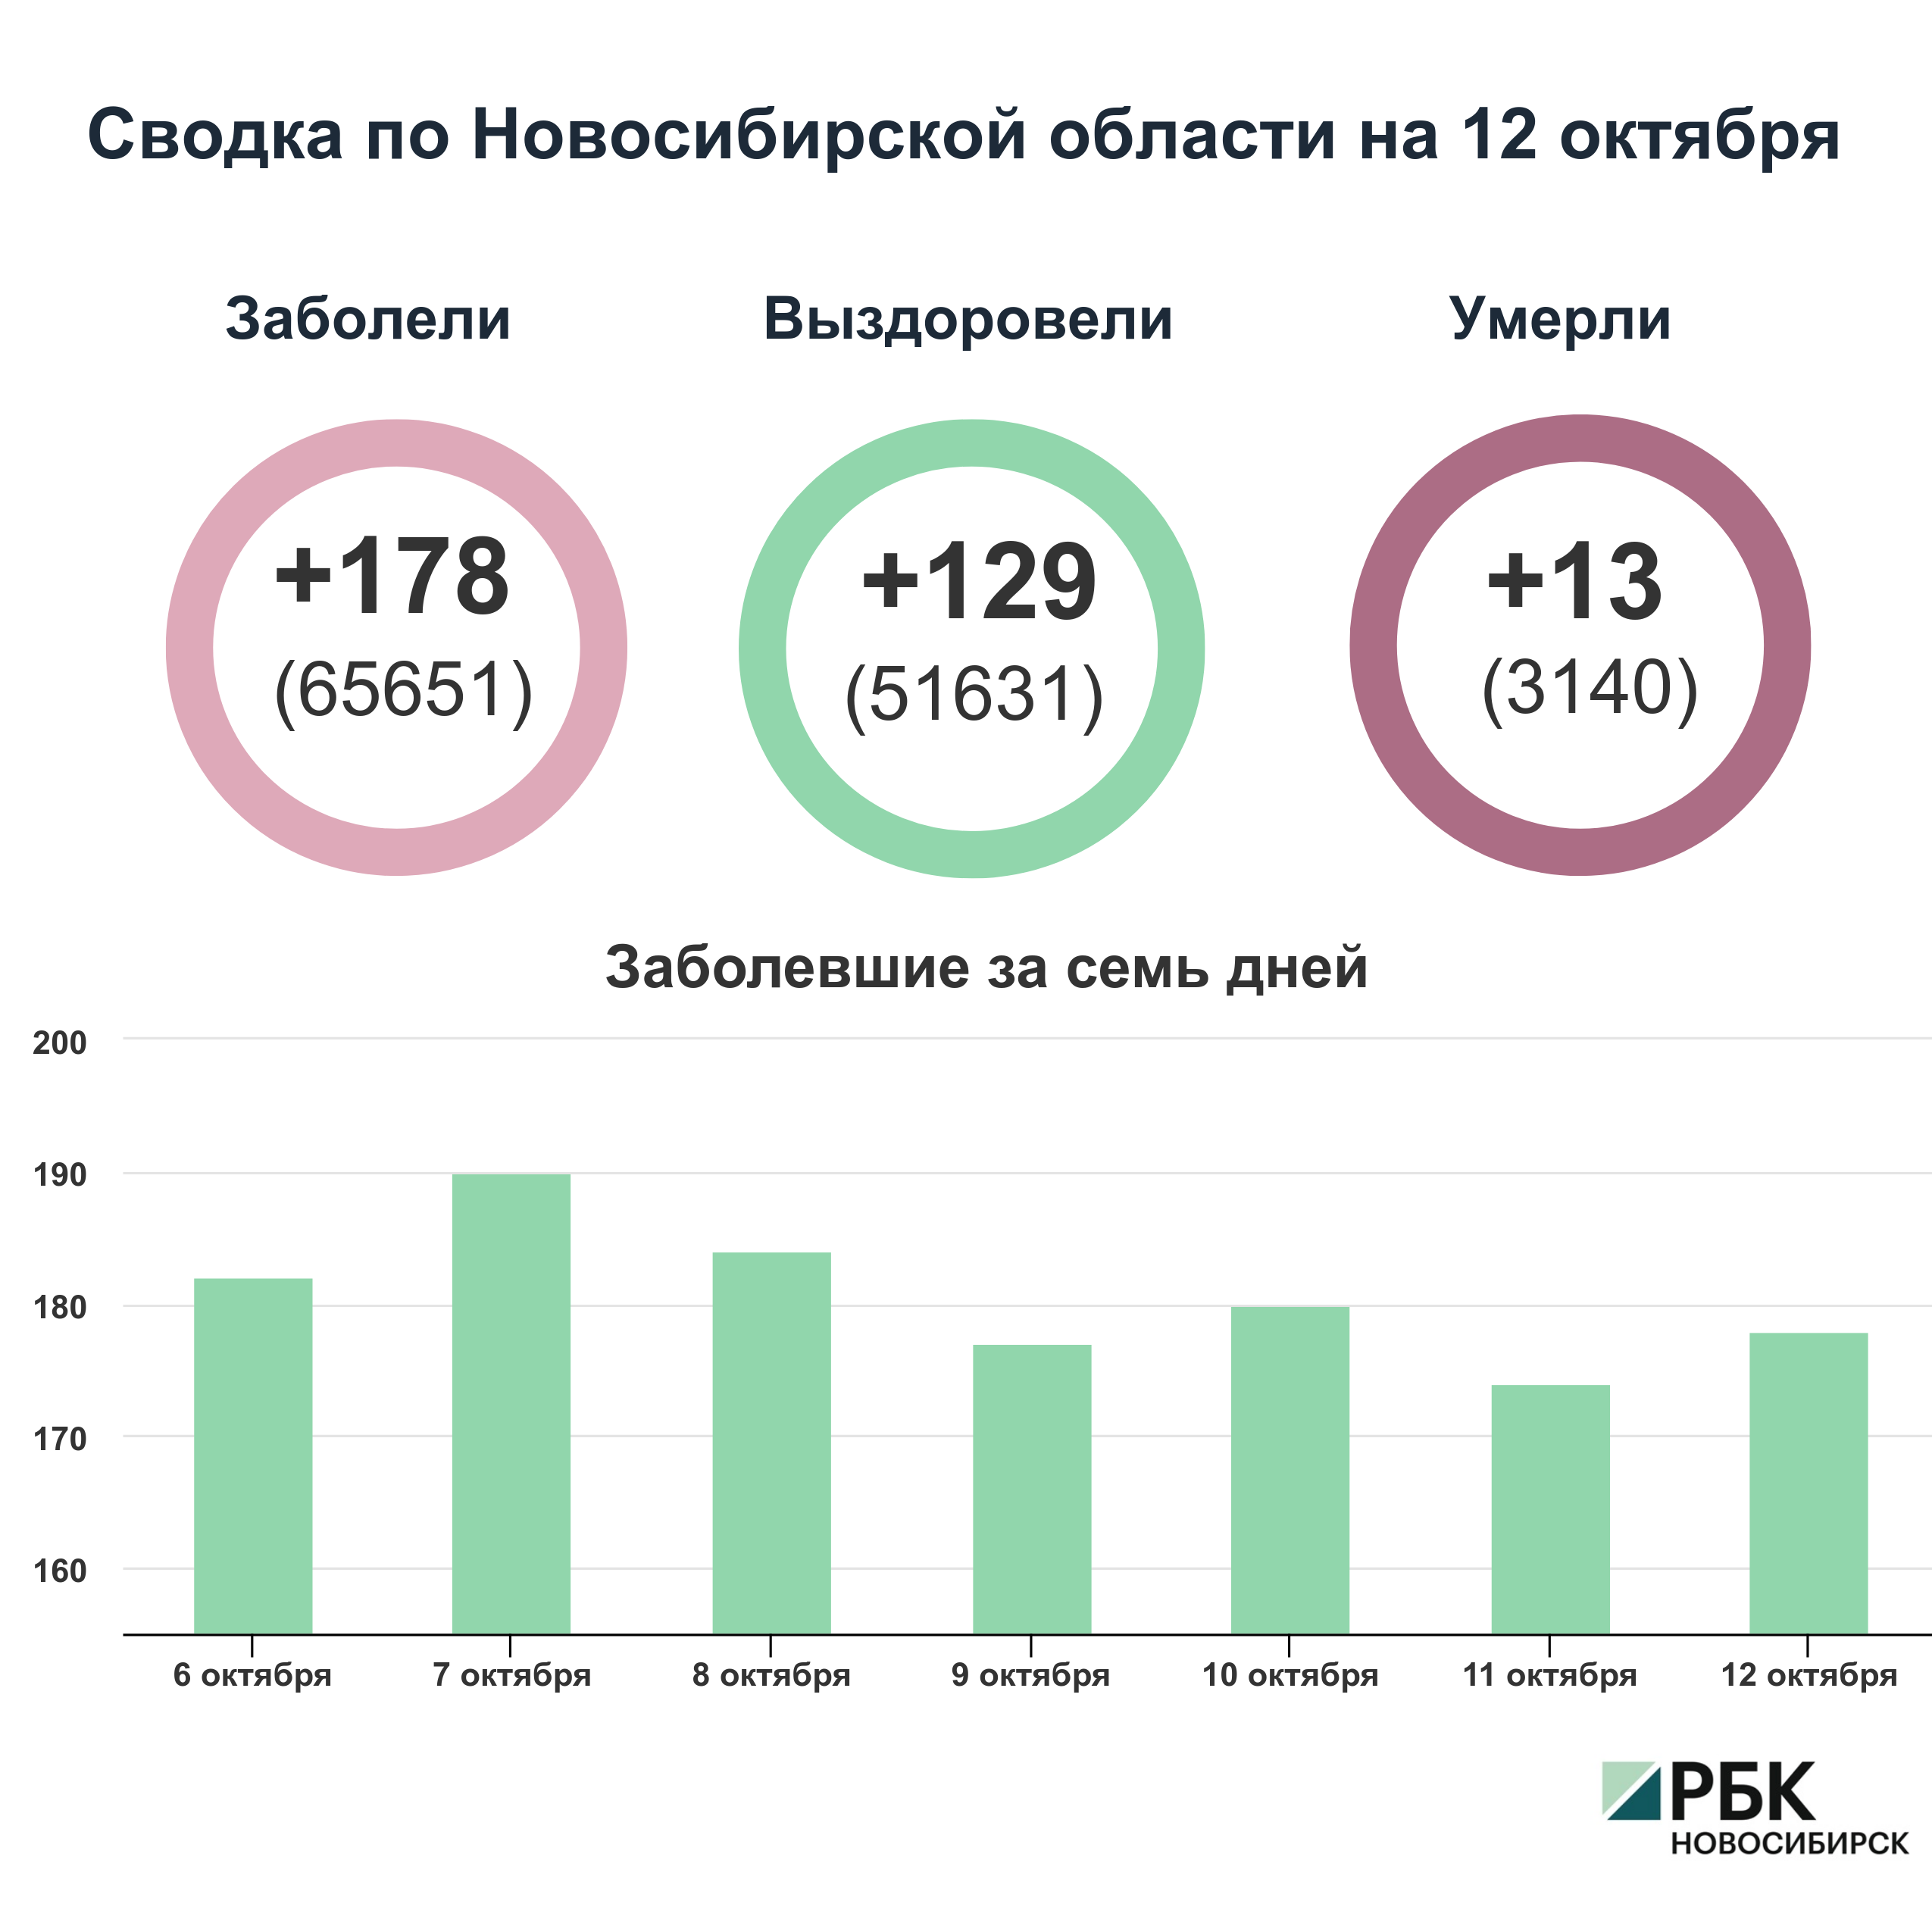 Коронавирус в Новосибирске: сводка на 12 октября